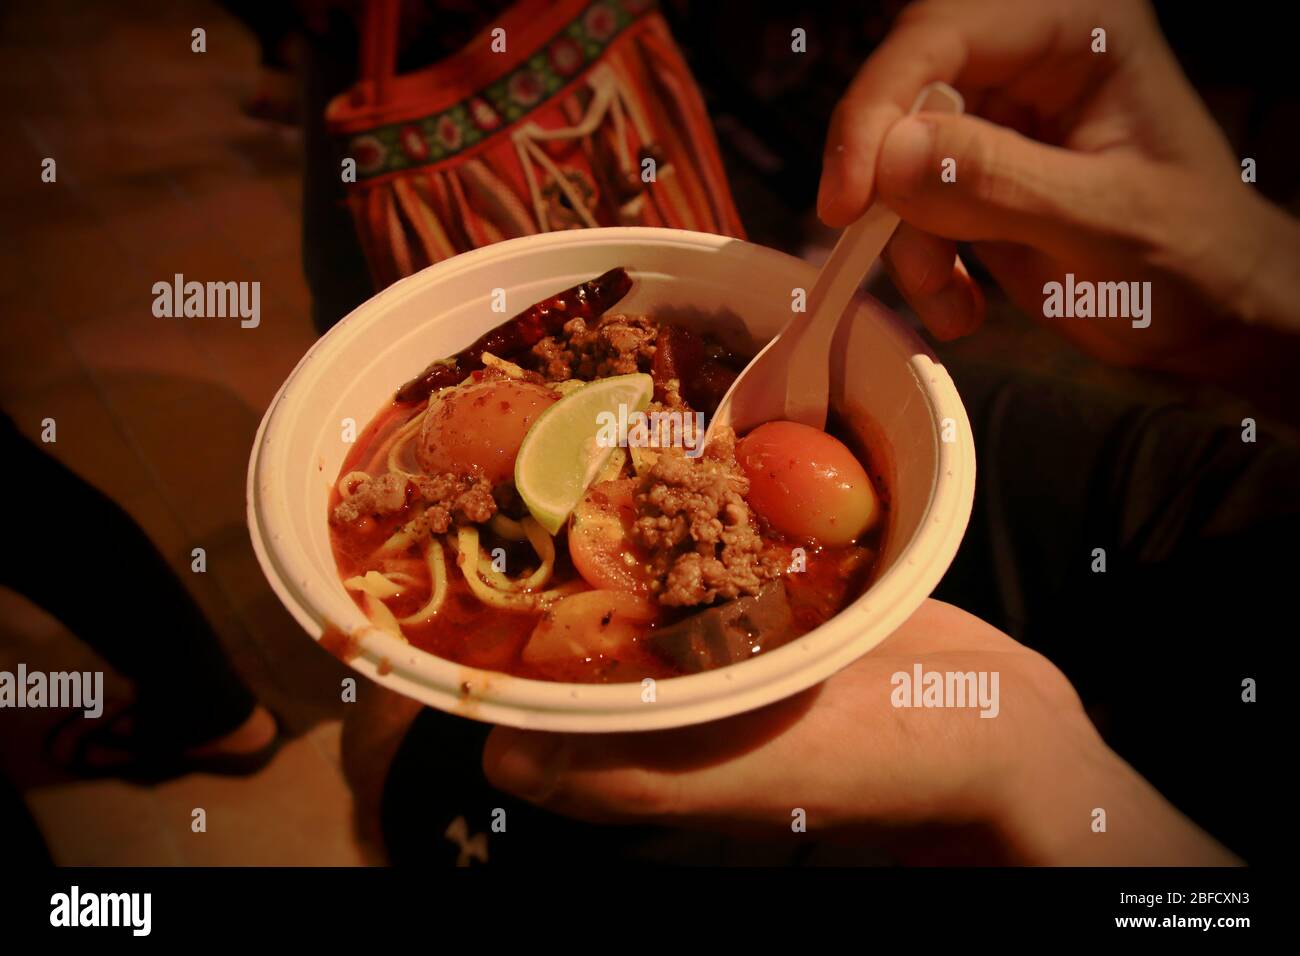 Soupe Laksa faite de nouilles de blé et de lait de coco au curry épicé, un plat populaire de la cuisine du Peranakan ou malaisienne Banque D'Images